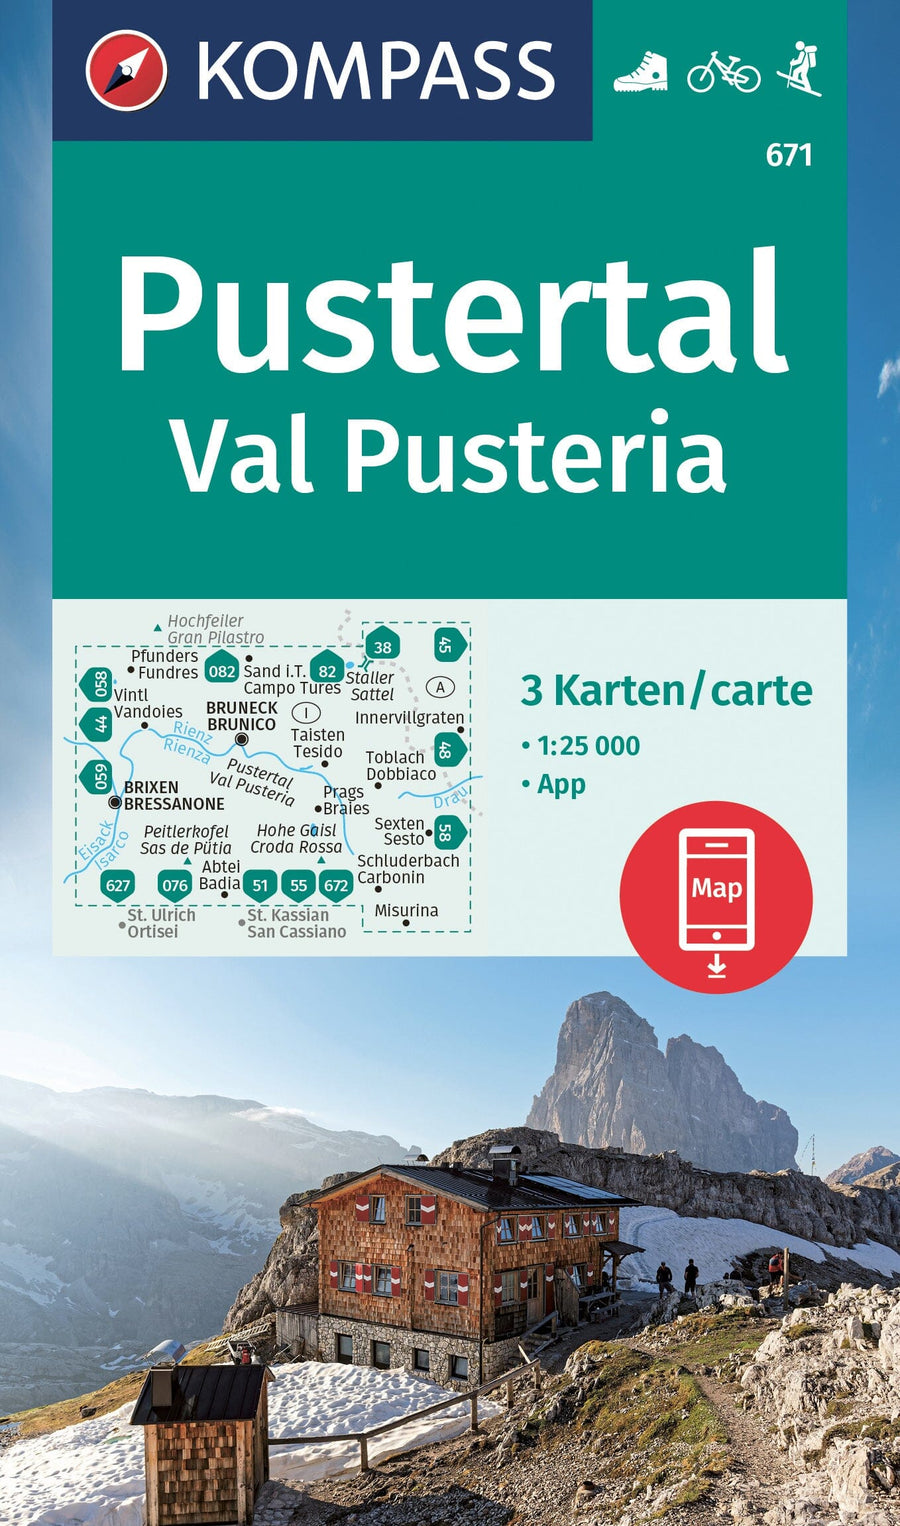 Carte de randonnée n° 672 - Dolomites (lot de 4 cartes) (Italie